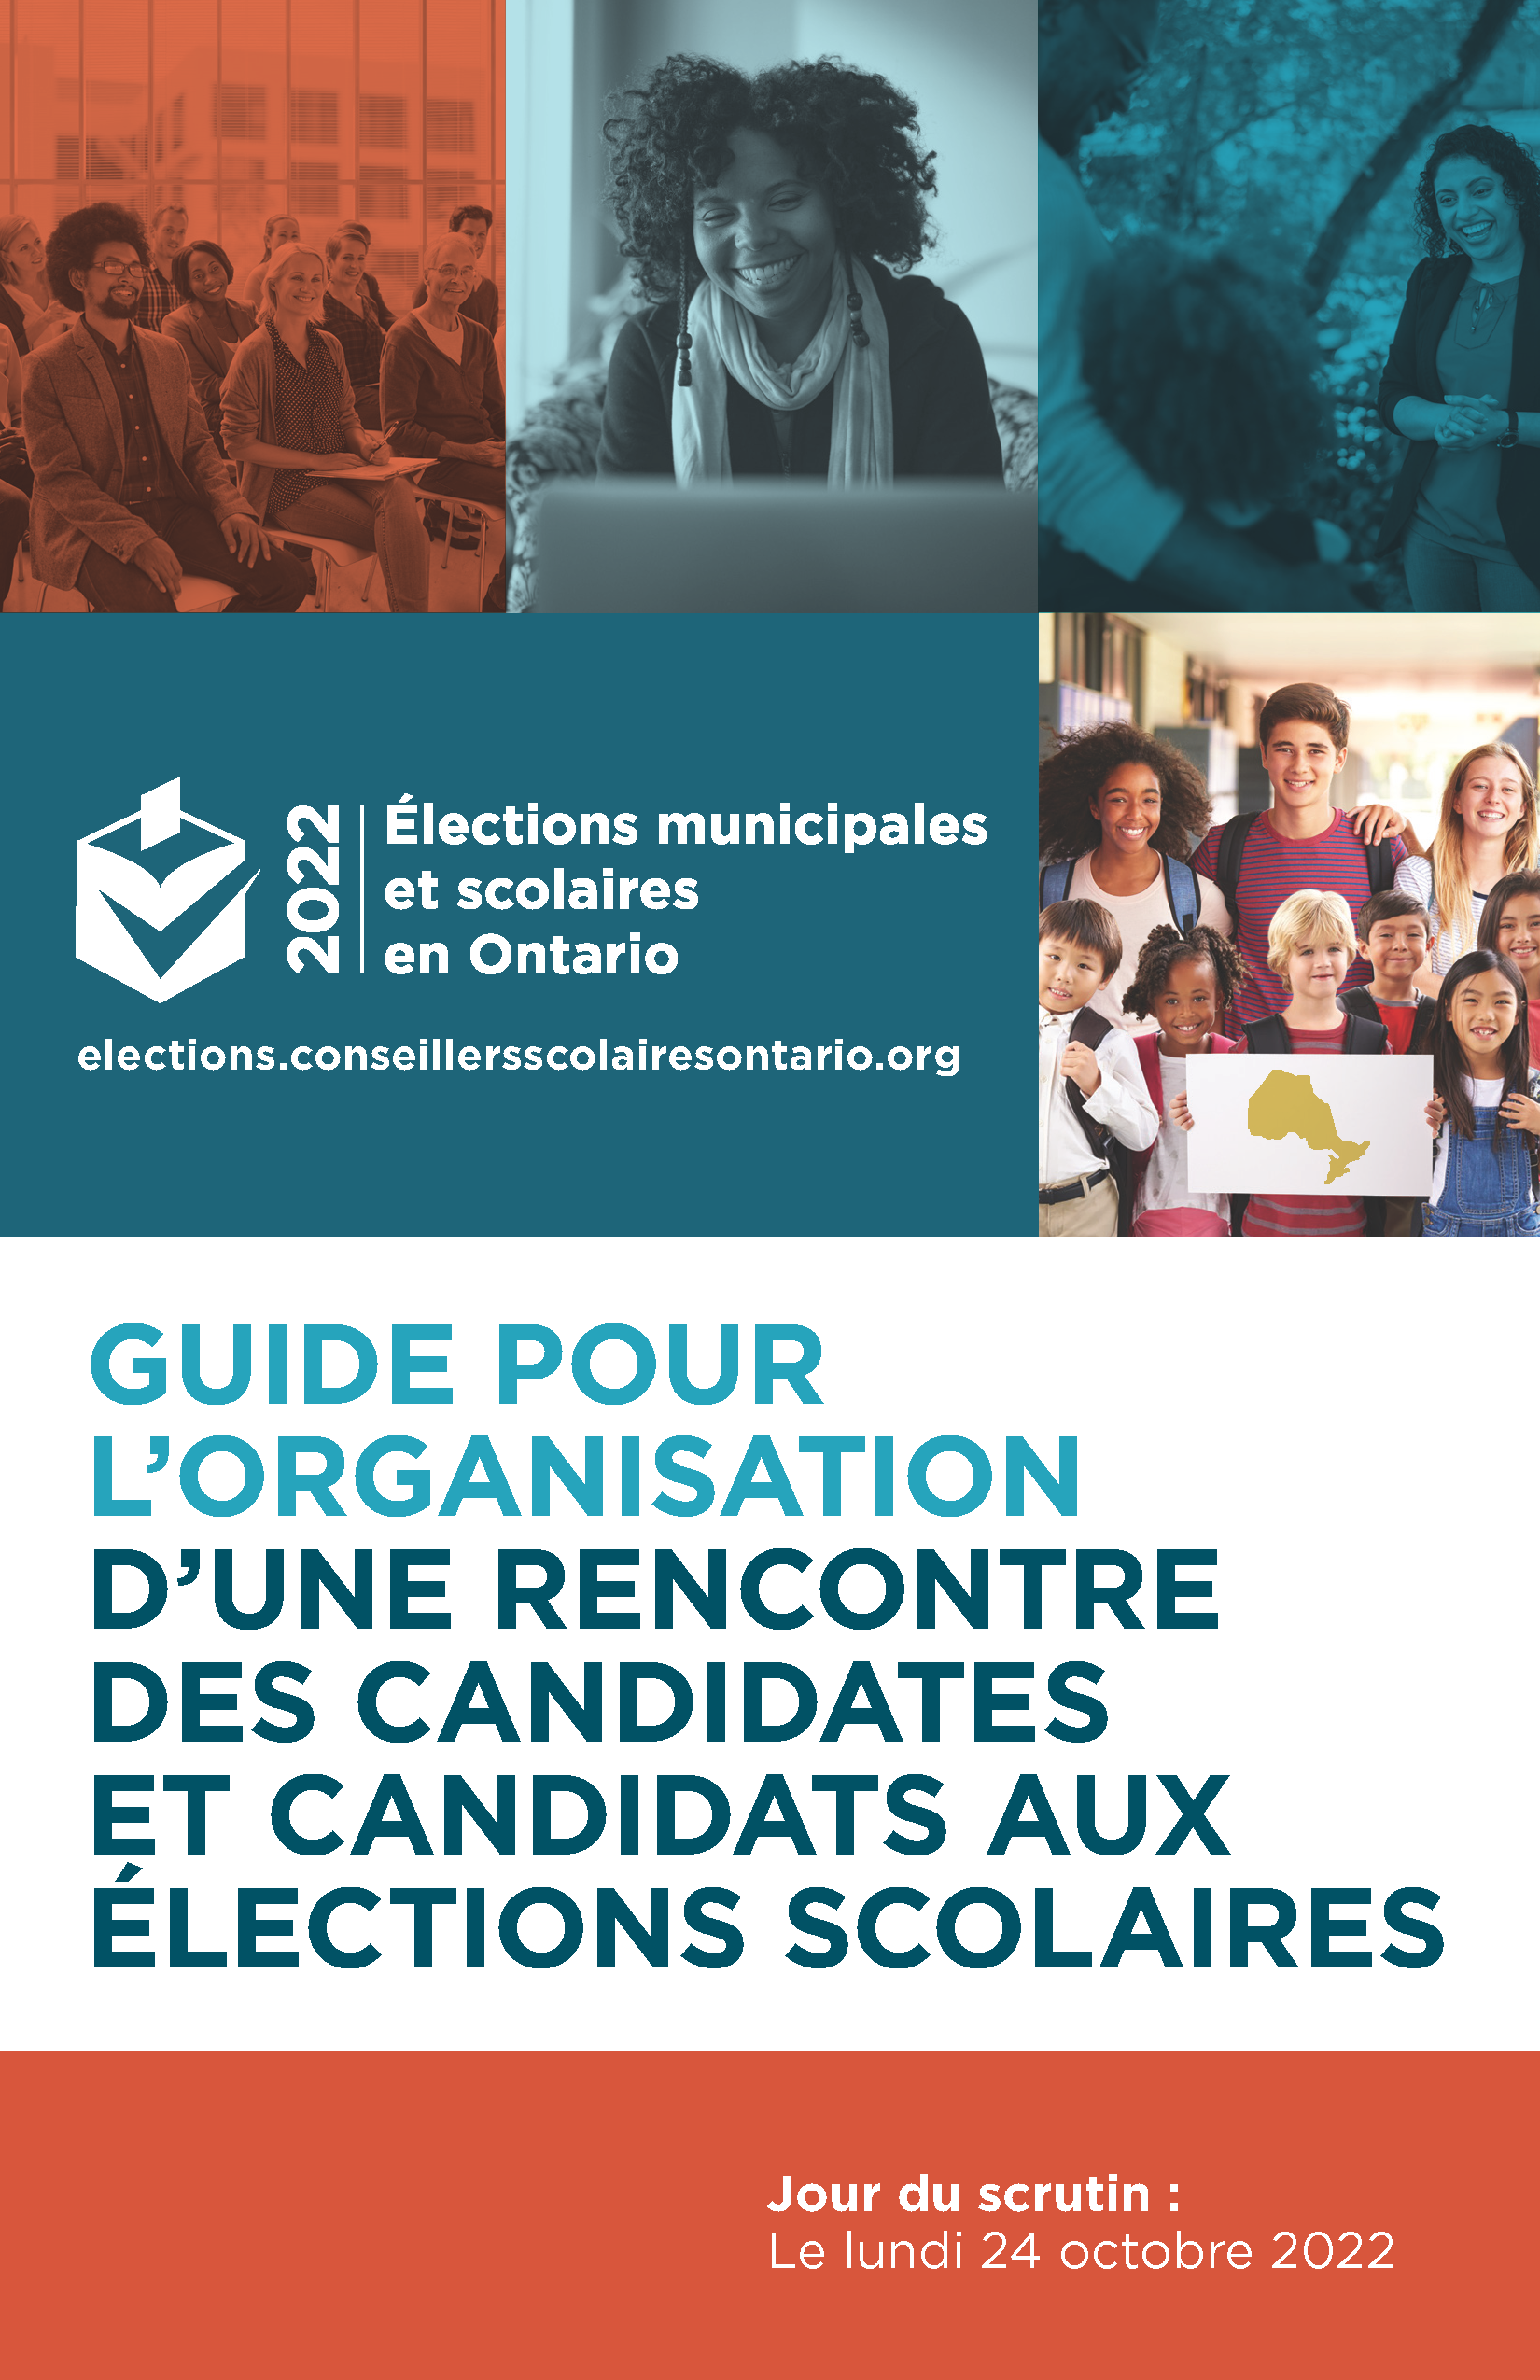  Guide Pour L’organisation D’une Rencontre Des Candidates Et Candidats Aux Élections Scolaires